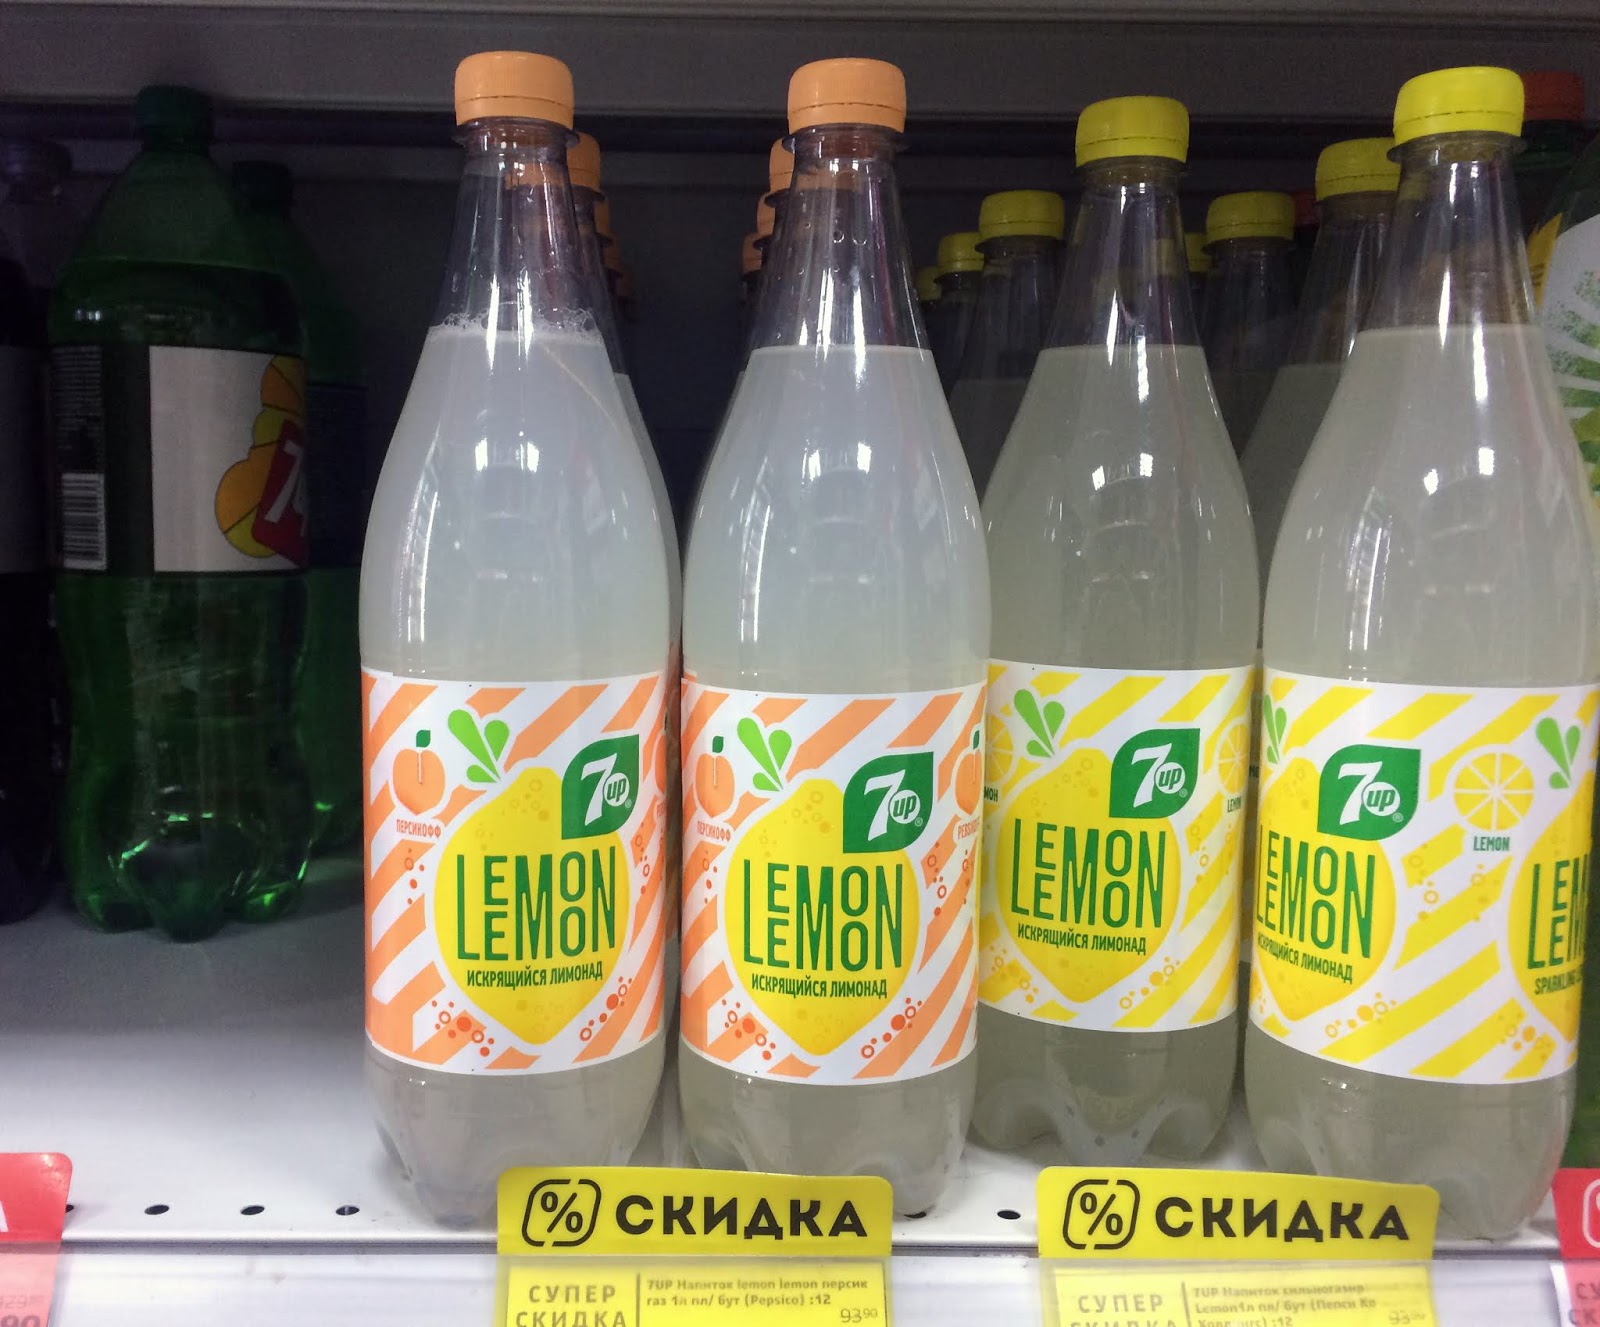 Лемон лид. 7up Lemon Lemon. Лимонный Севен ап. Сок лимонный 7up. Севен ап лимон лимон.